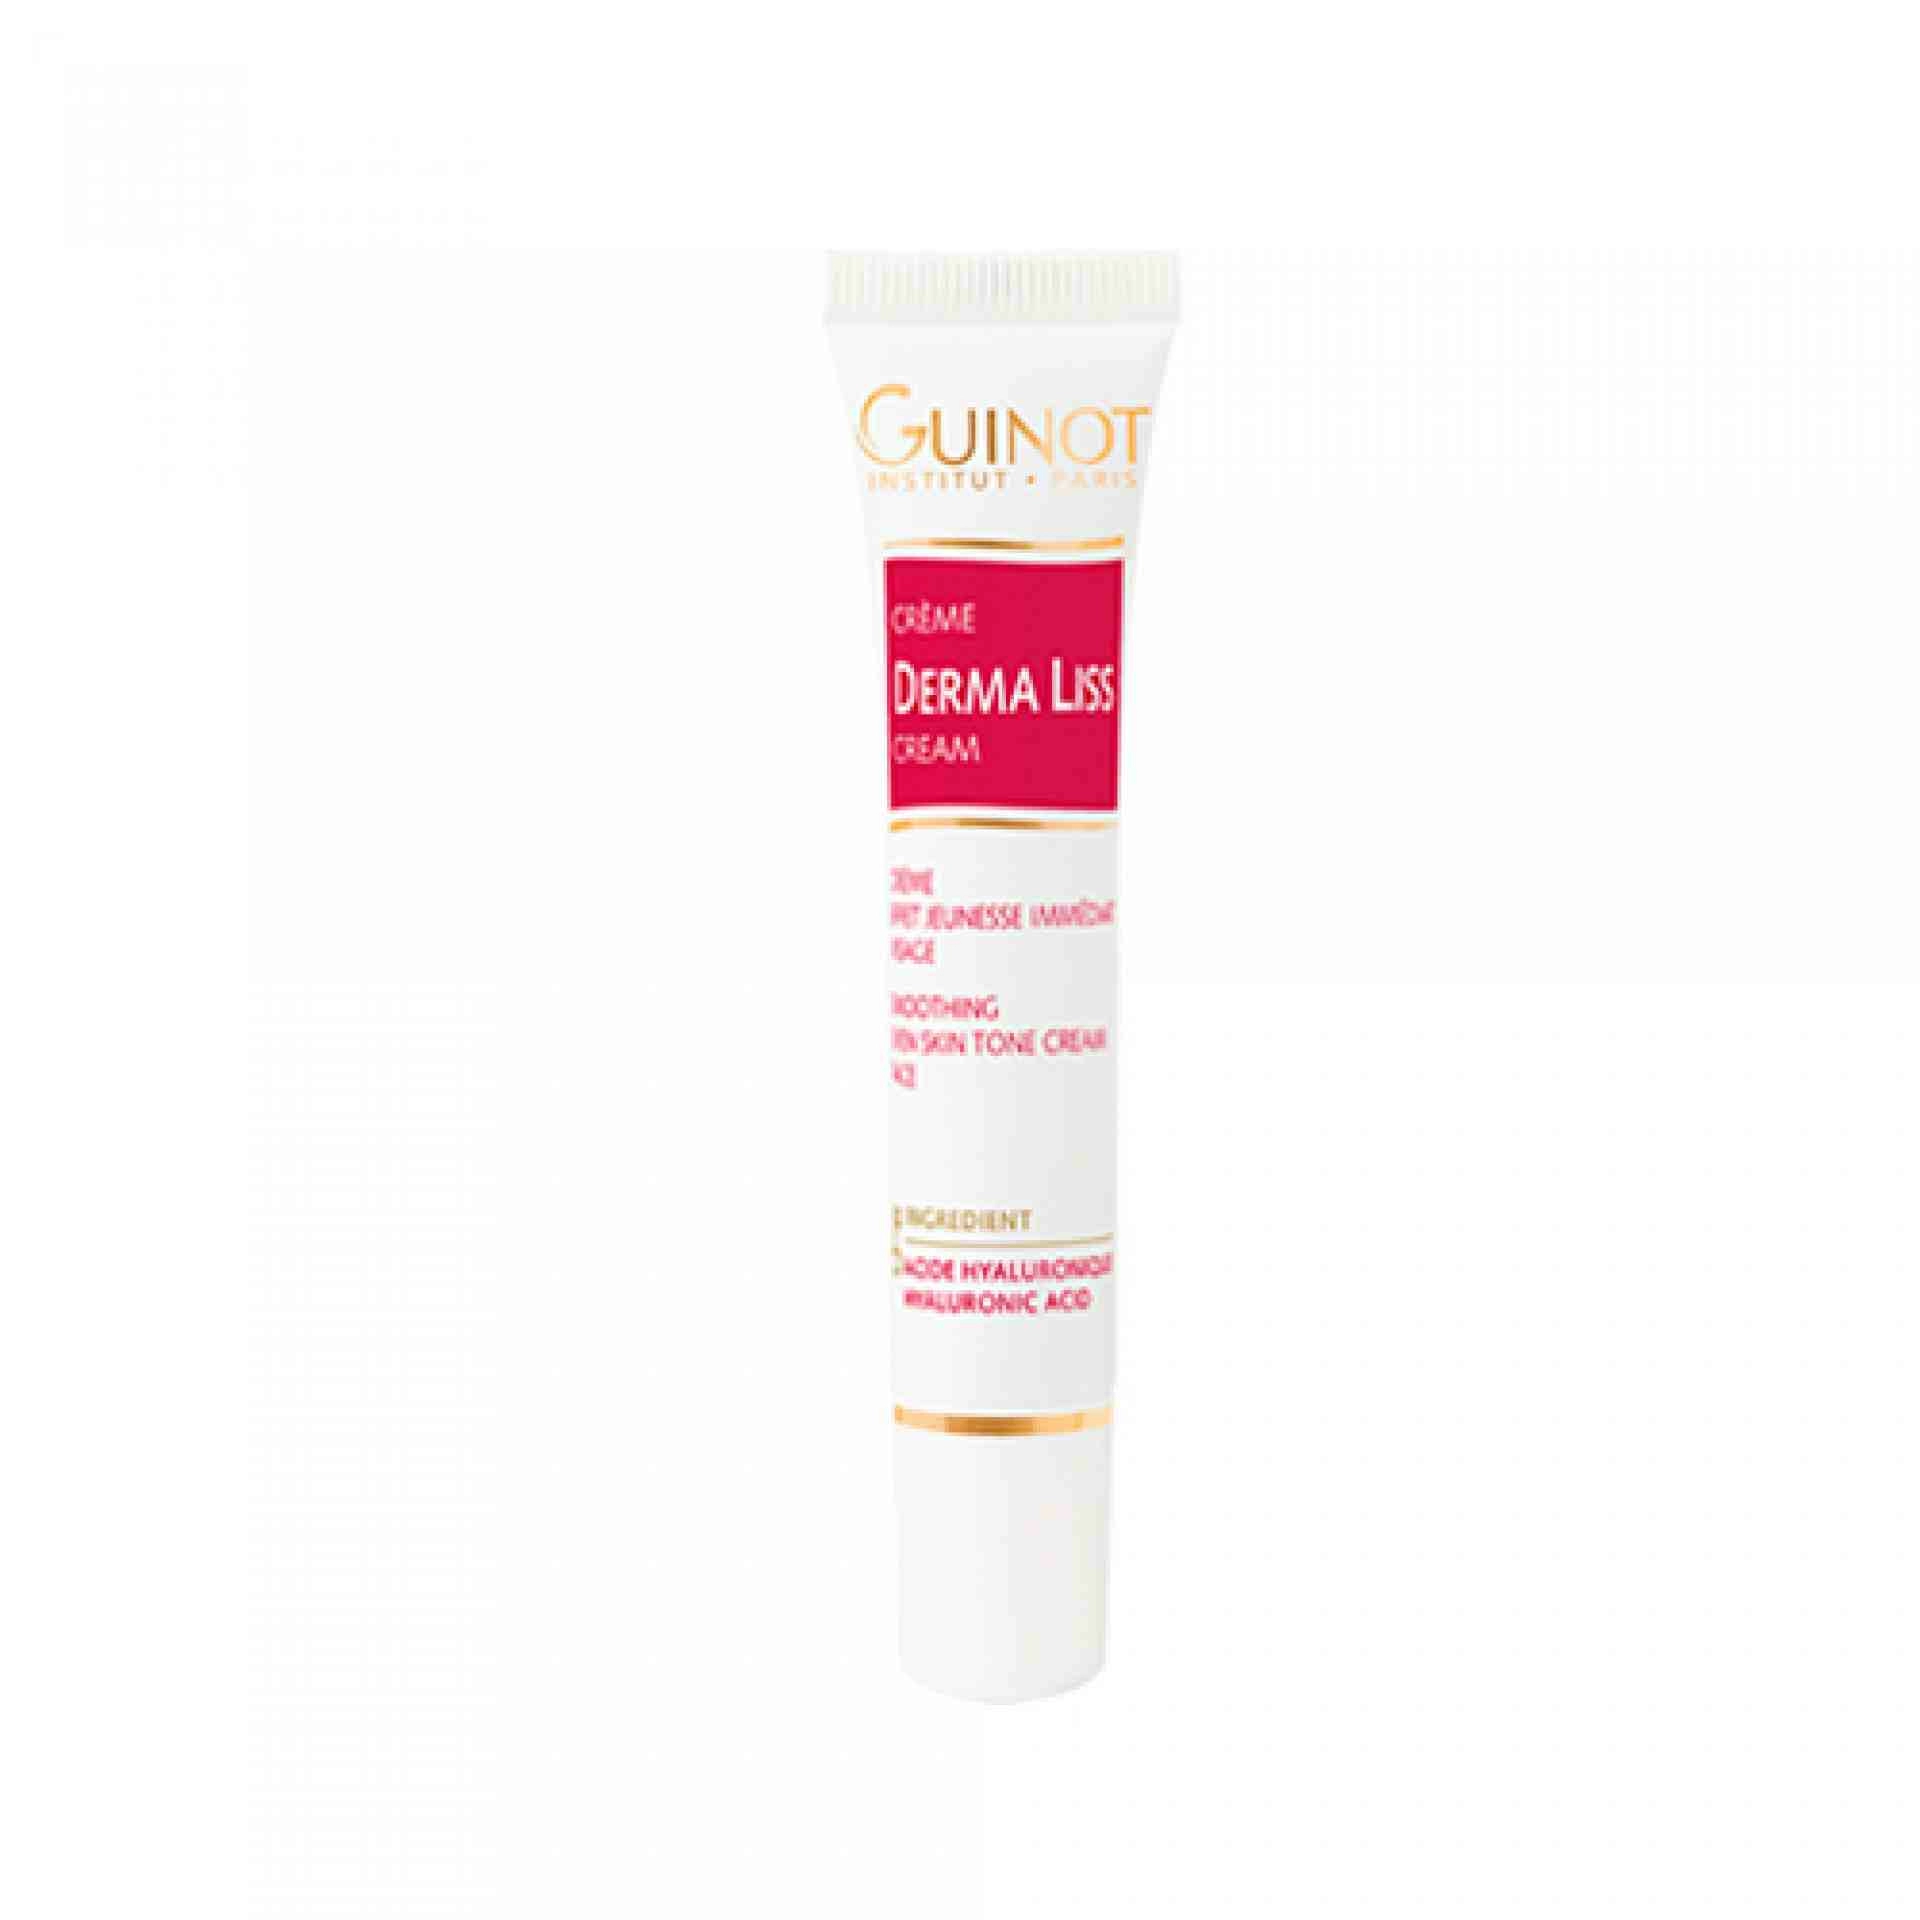 Crème Derma Liss | Tratamiento Arrugas y Poros Dilatados 13ml - Guinot ®